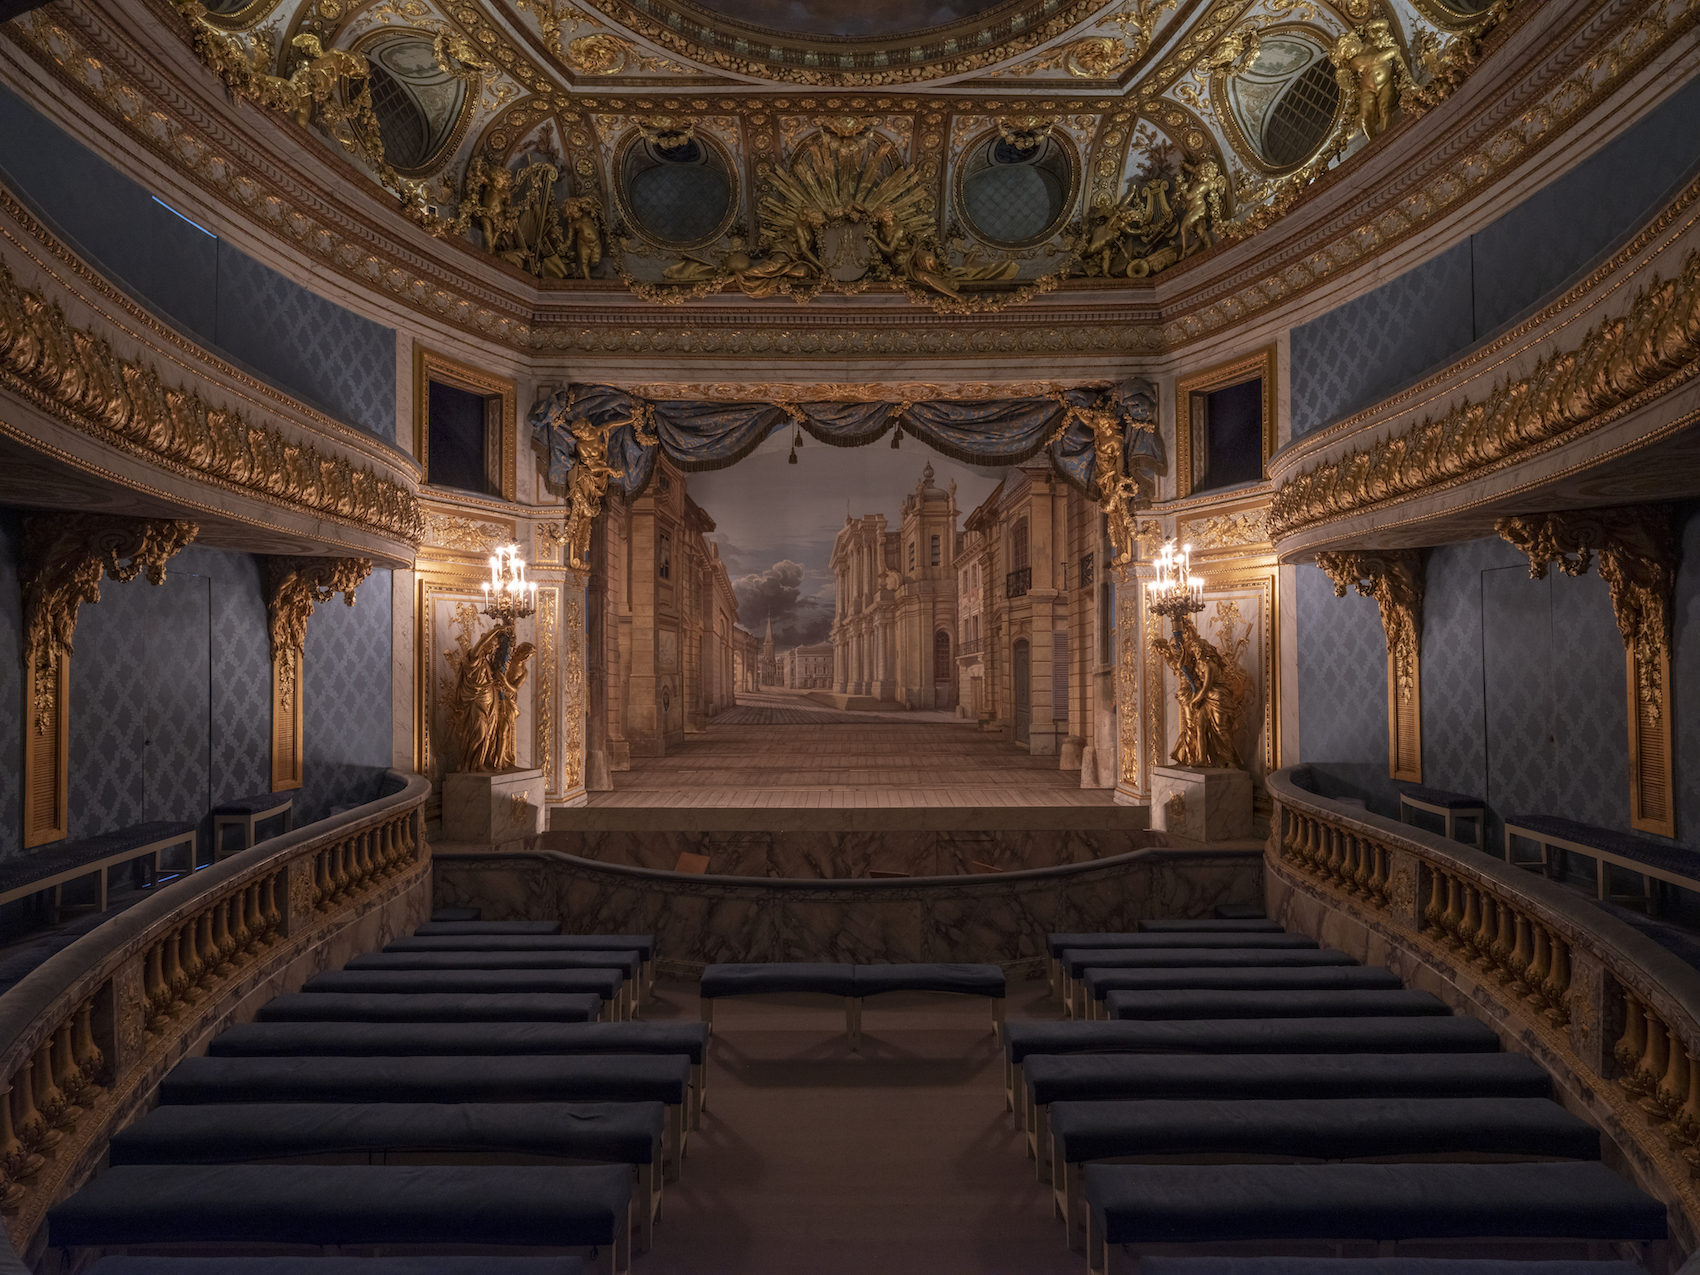 Le décor restauré installé sur la scène du théâtre de la Reine. © Château de Versailles / T. Garnier